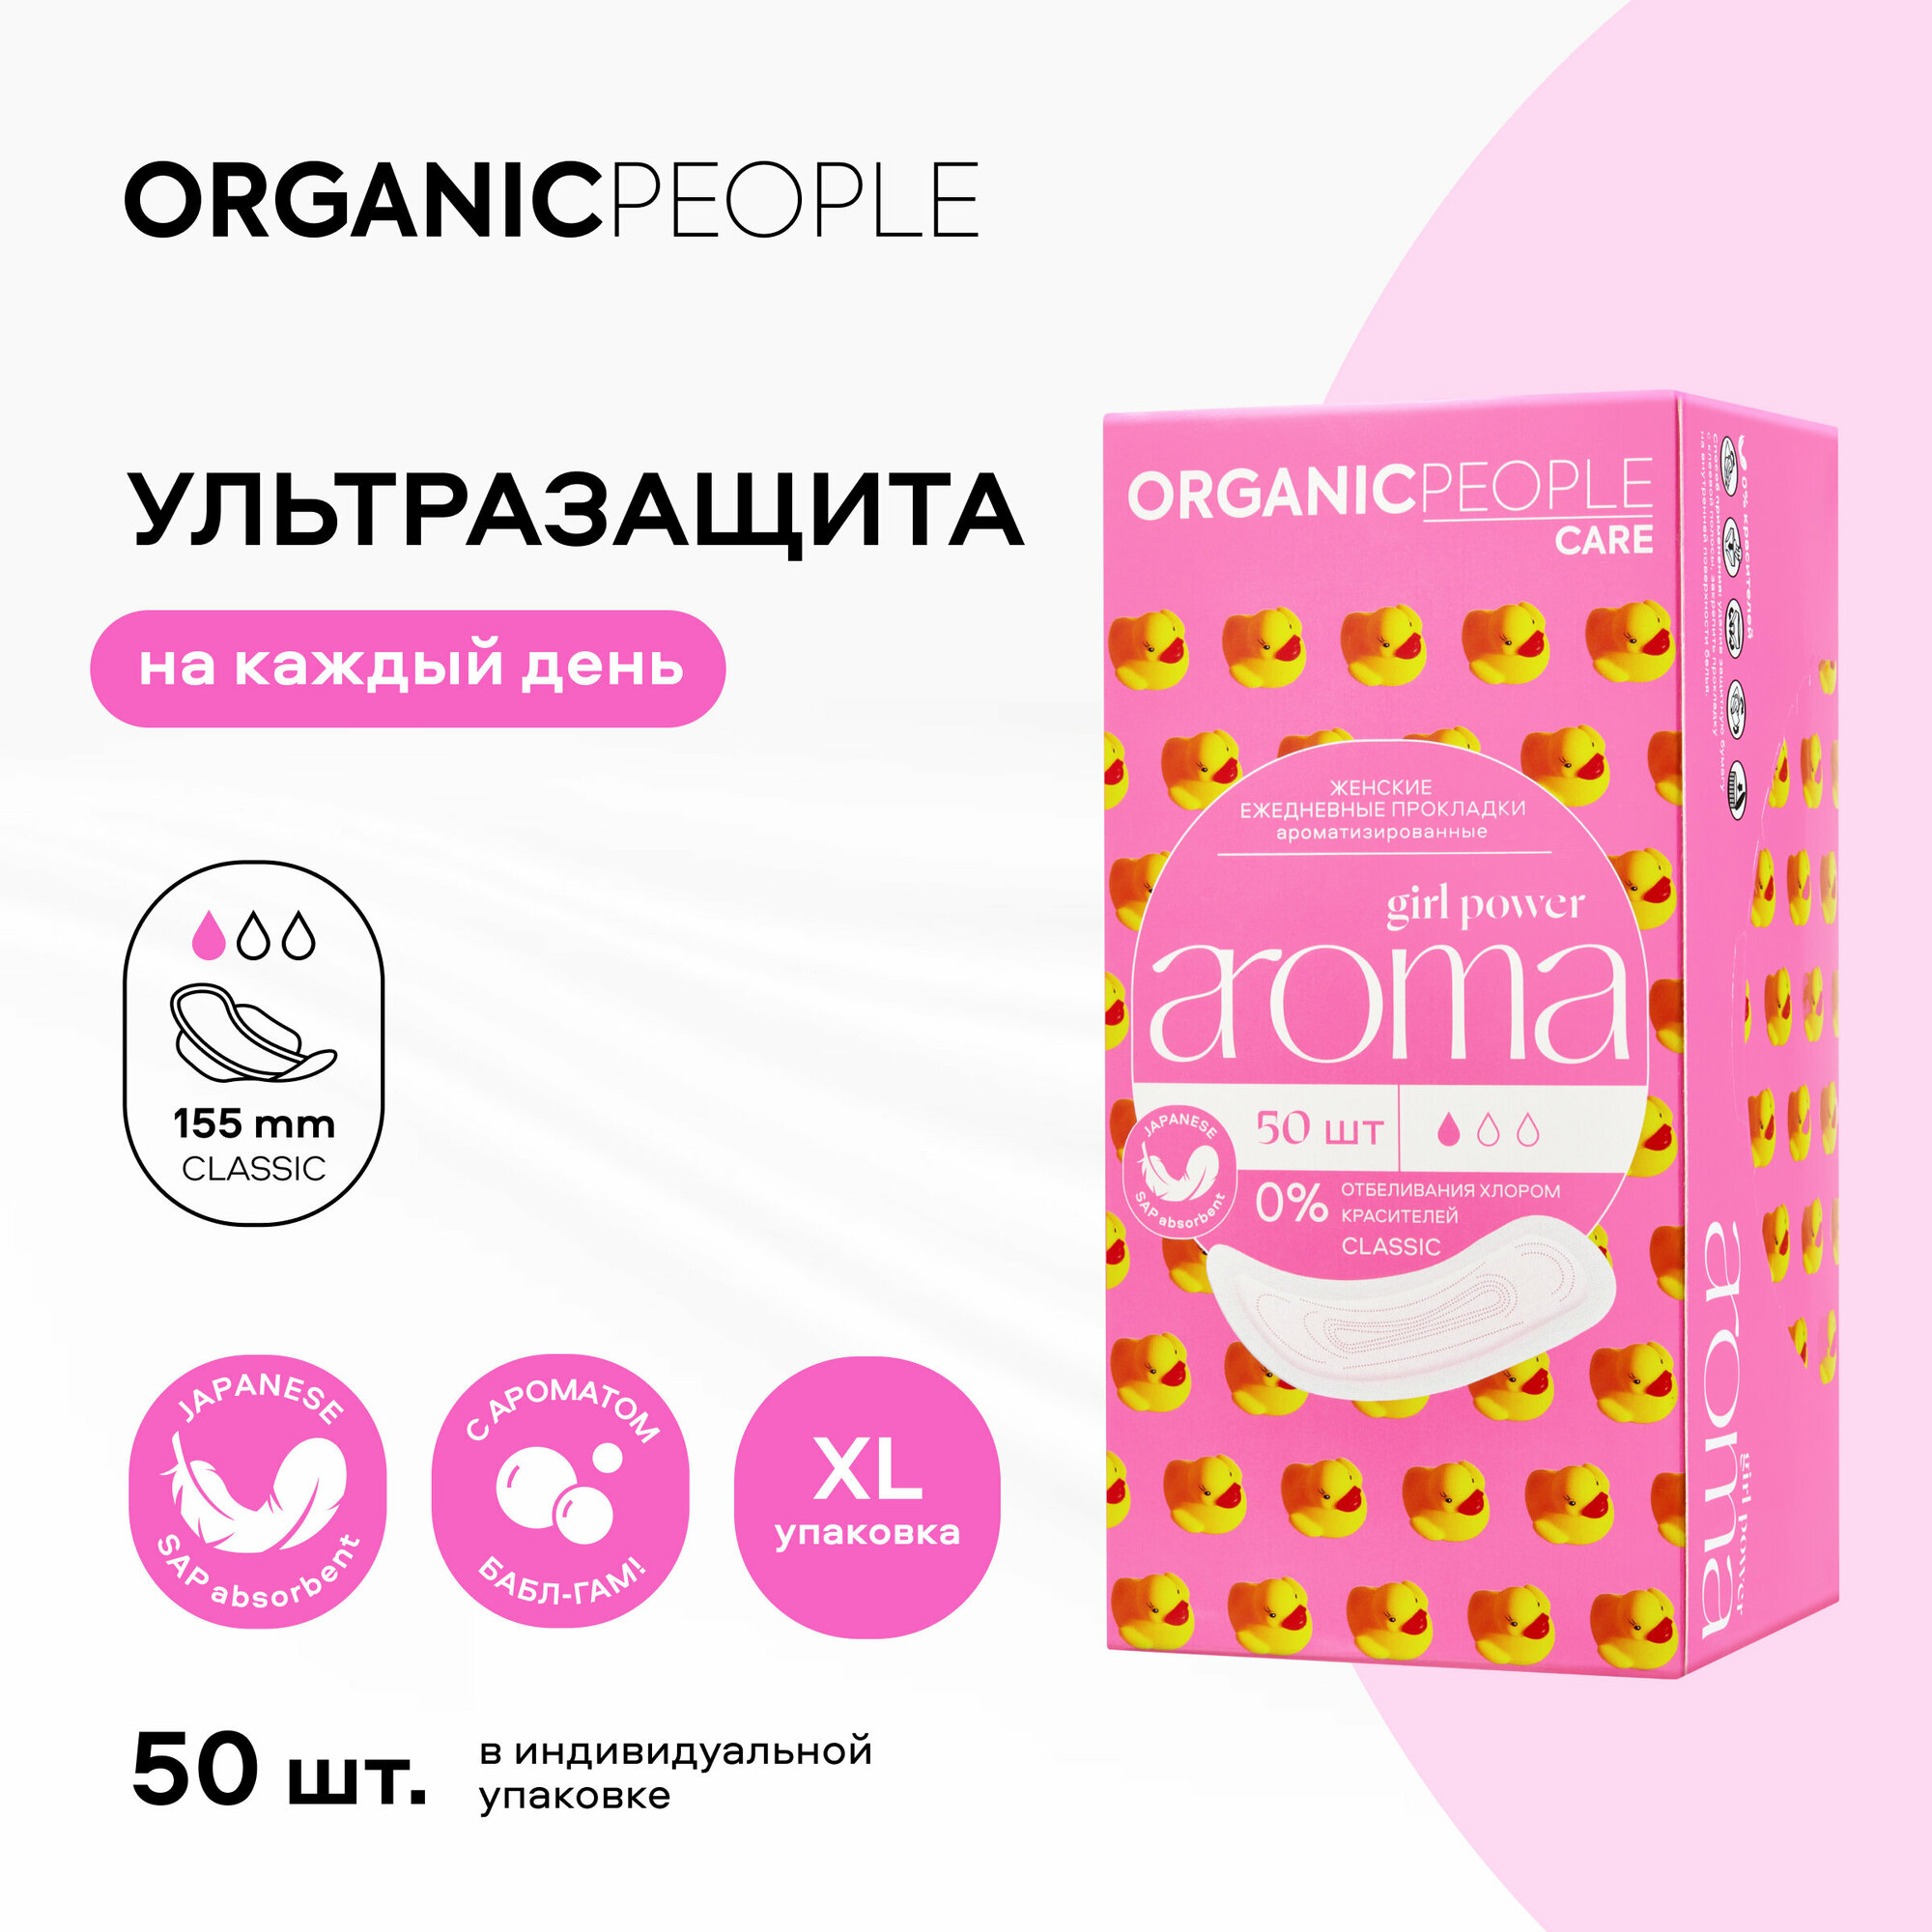 Прокладки Organic People Girl Power ежедневные ароматизированные Aroma Classic 20шт Планета Органика - фото №1